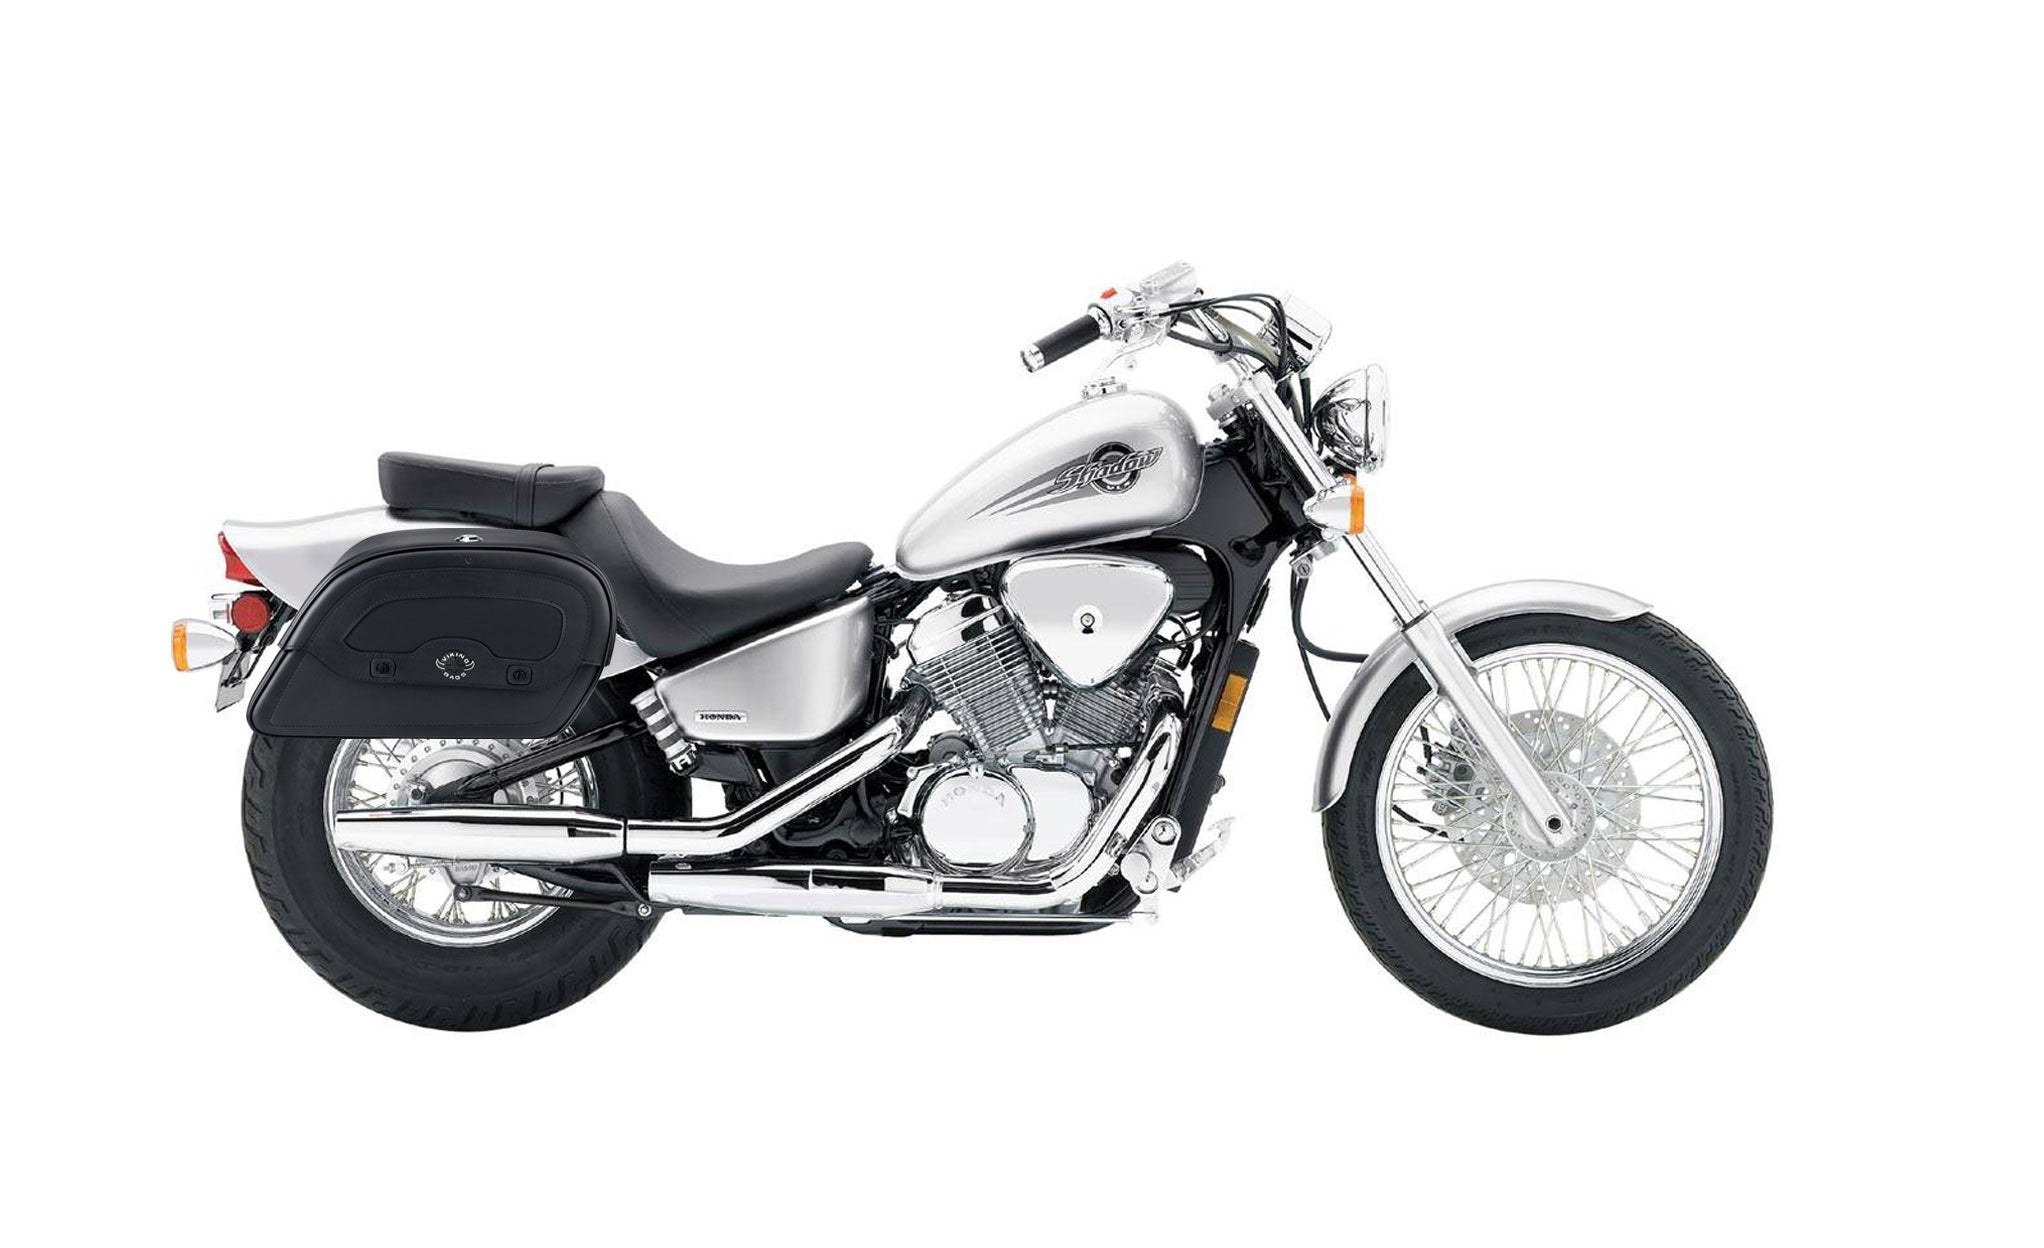 Viking Warrior Medium Honda Shadow 600 Vlx Leather Motorcycle Saddlebags on Bike Photo @expand